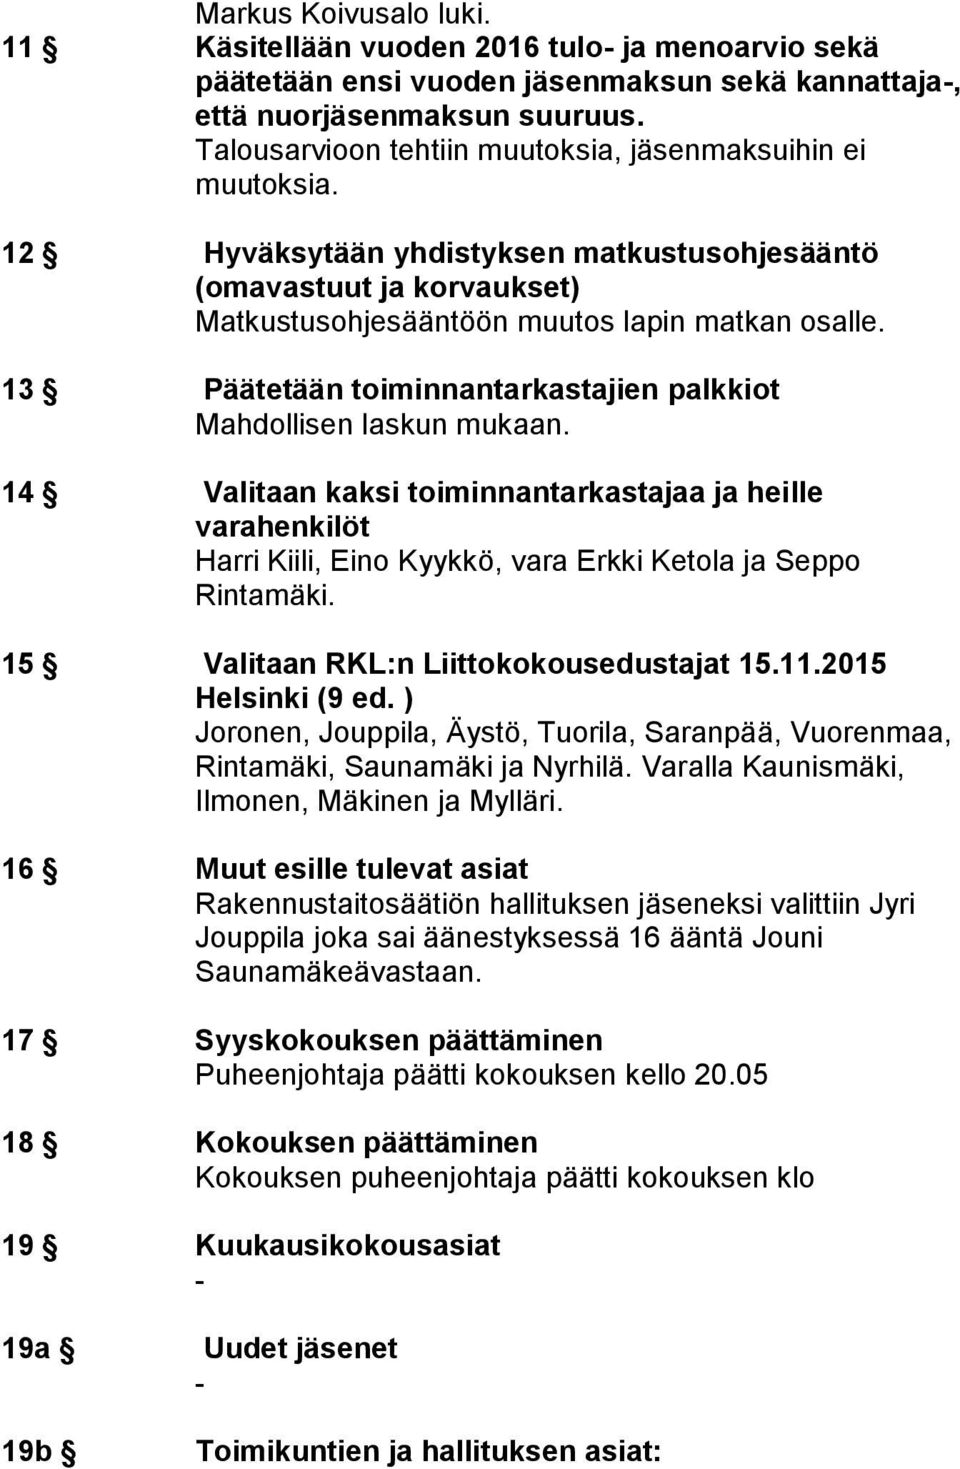 13 Päätetään toiminnantarkastajien palkkiot Mahdollisen laskun mukaan. 14 Valitaan kaksi toiminnantarkastajaa ja heille varahenkilöt Harri Kiili, Eino Kyykkö, vara Erkki Ketola ja Seppo Rintamäki.